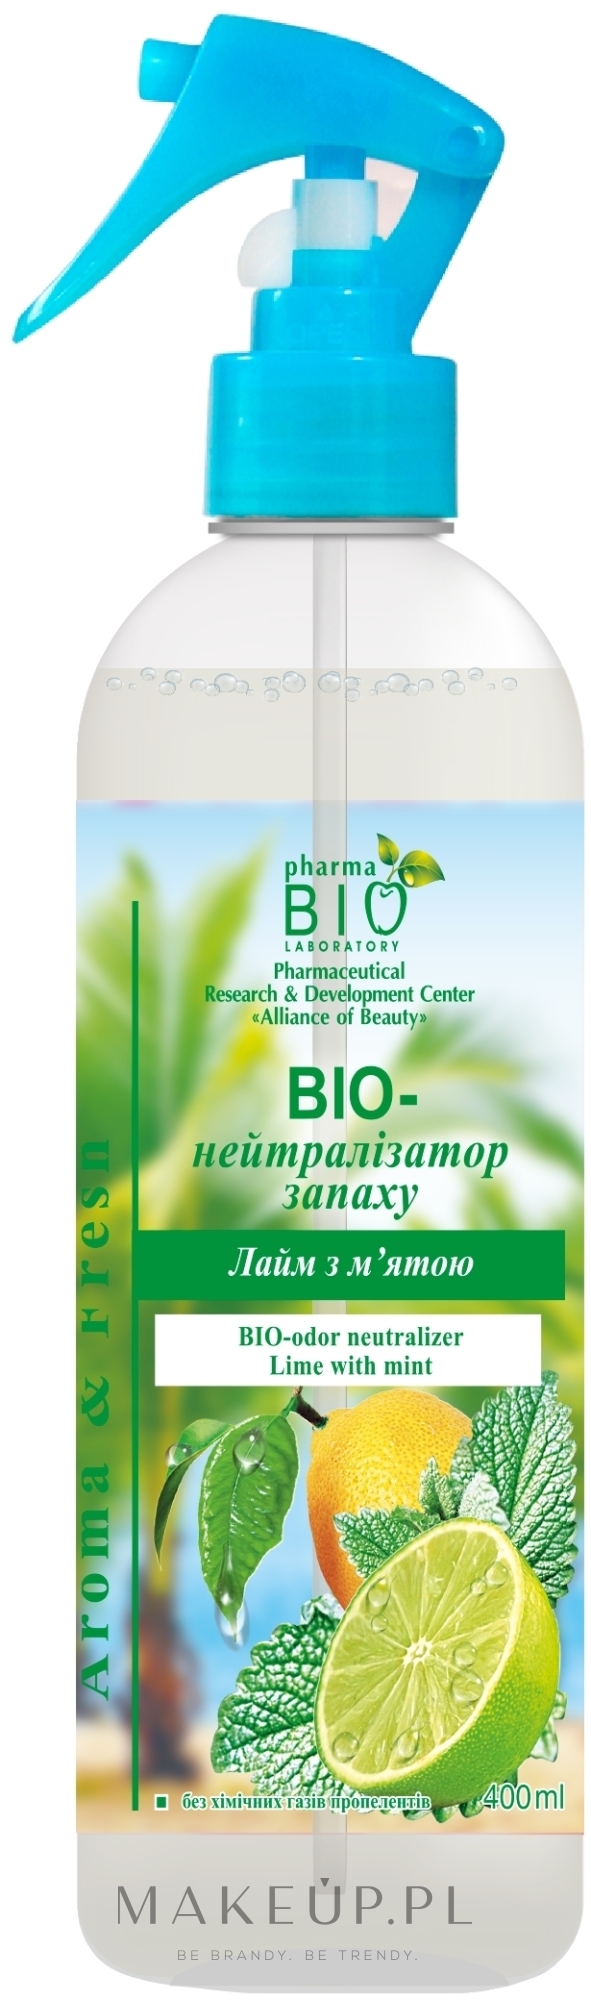 Odświeżacz powietrza Bioneutralizator zapachu Limonka z miętą - Pharma Bio Laboratory — Zdjęcie 400 ml